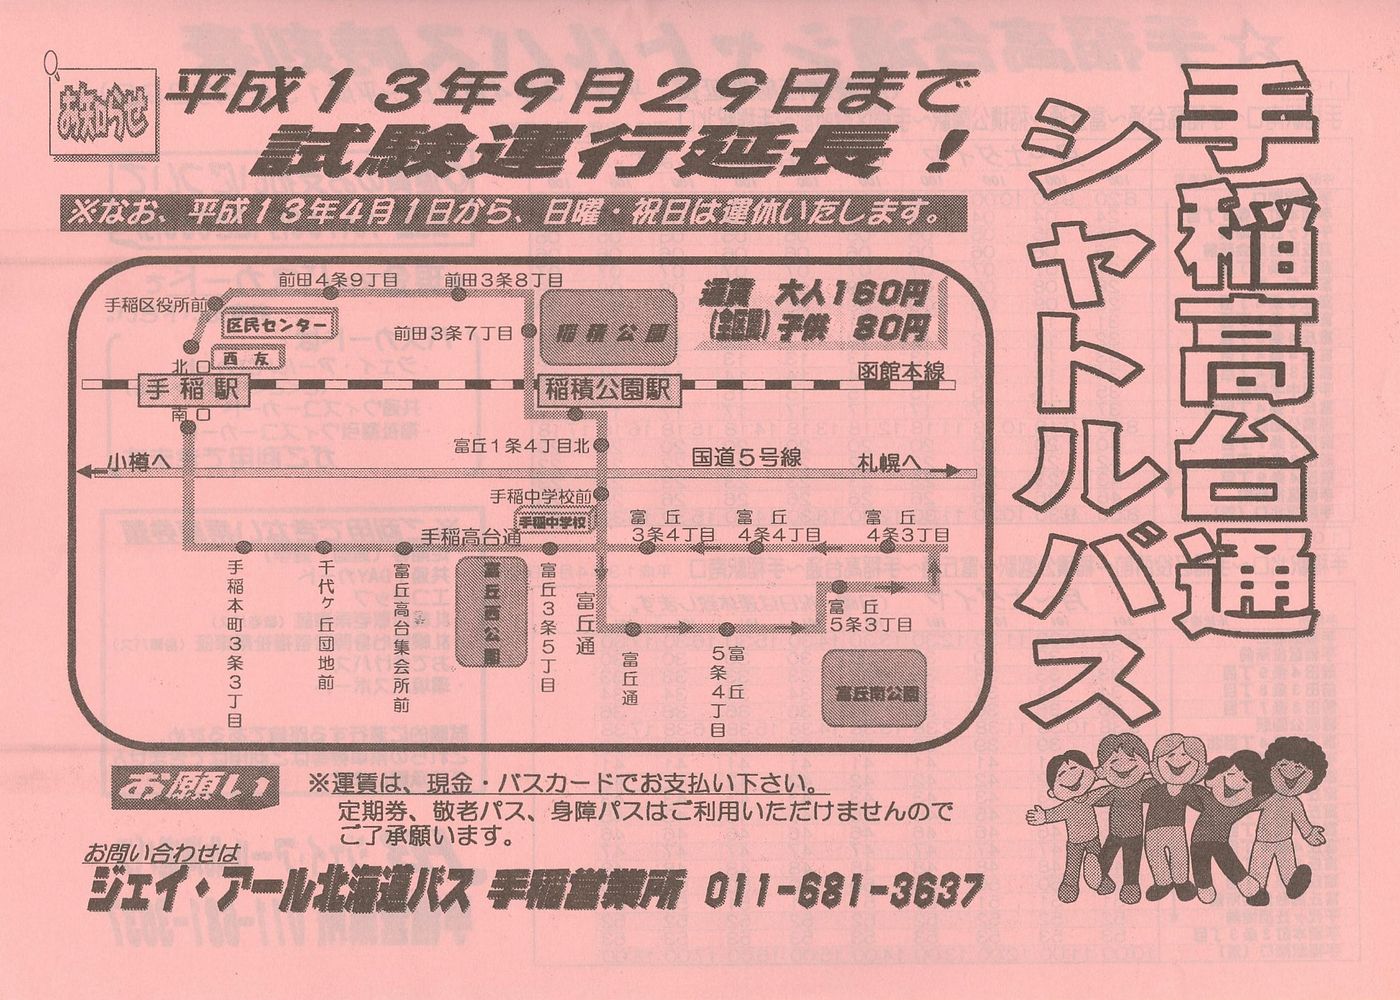 2001-04-01改正_ジェイ・アール北海道バス_手稲高台通シャトルバスチラシ表面